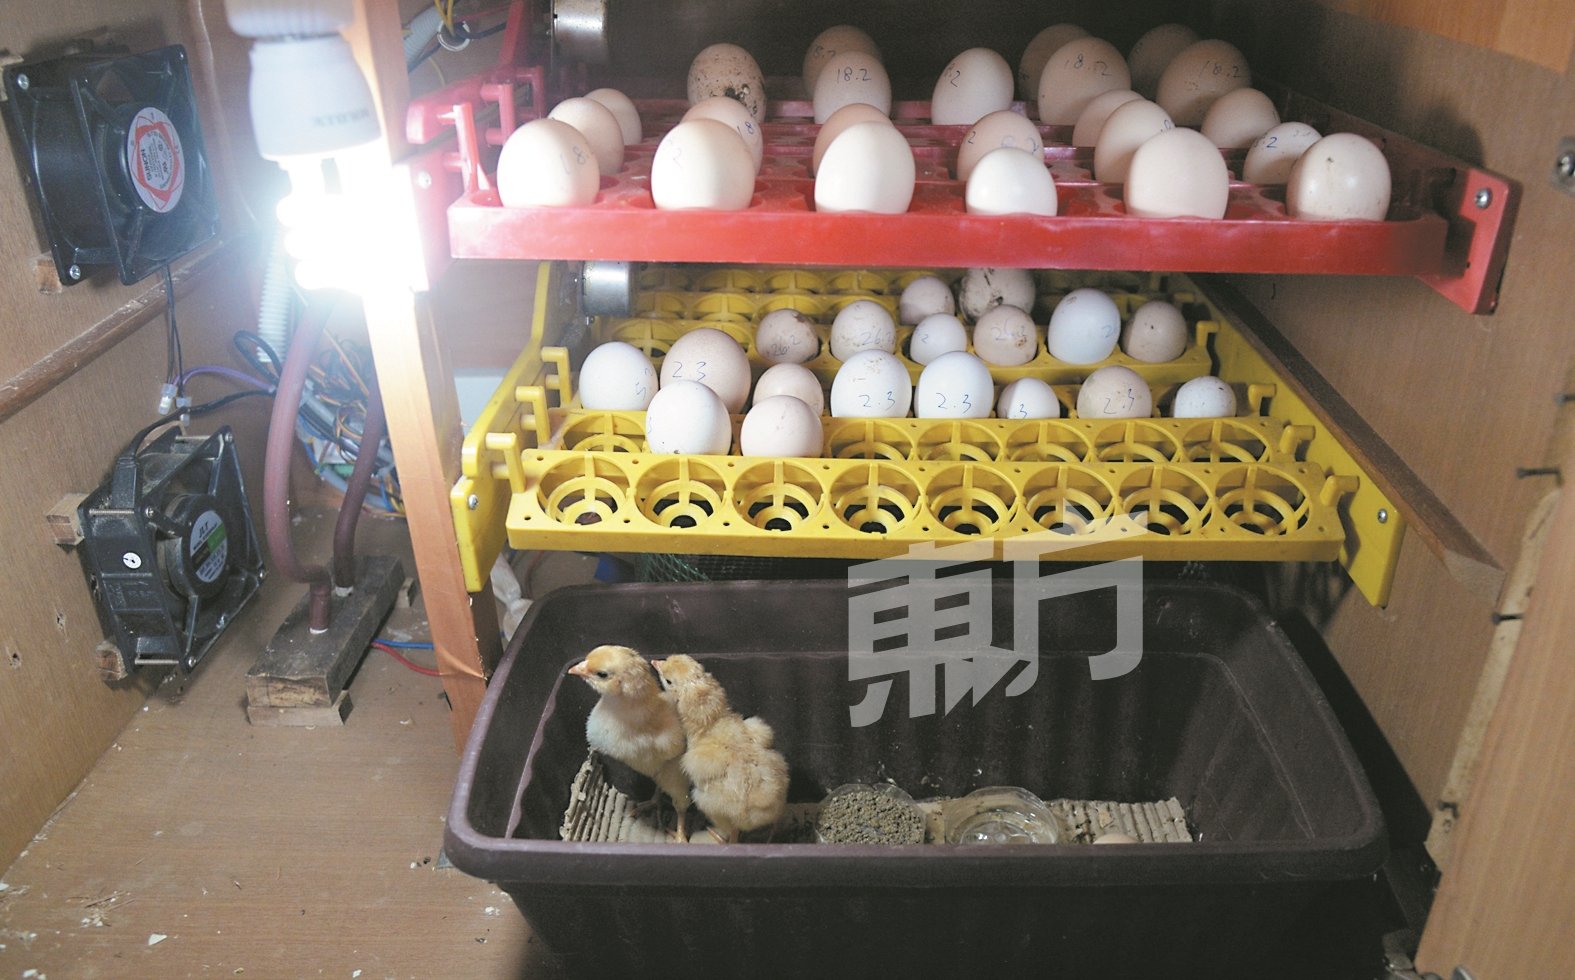 孵化鸡蛋需要21天的时间，而温度将会直接影响孵化率，因此黄奕伟特别自制一个孵化器，确保小鸡成功孵化。